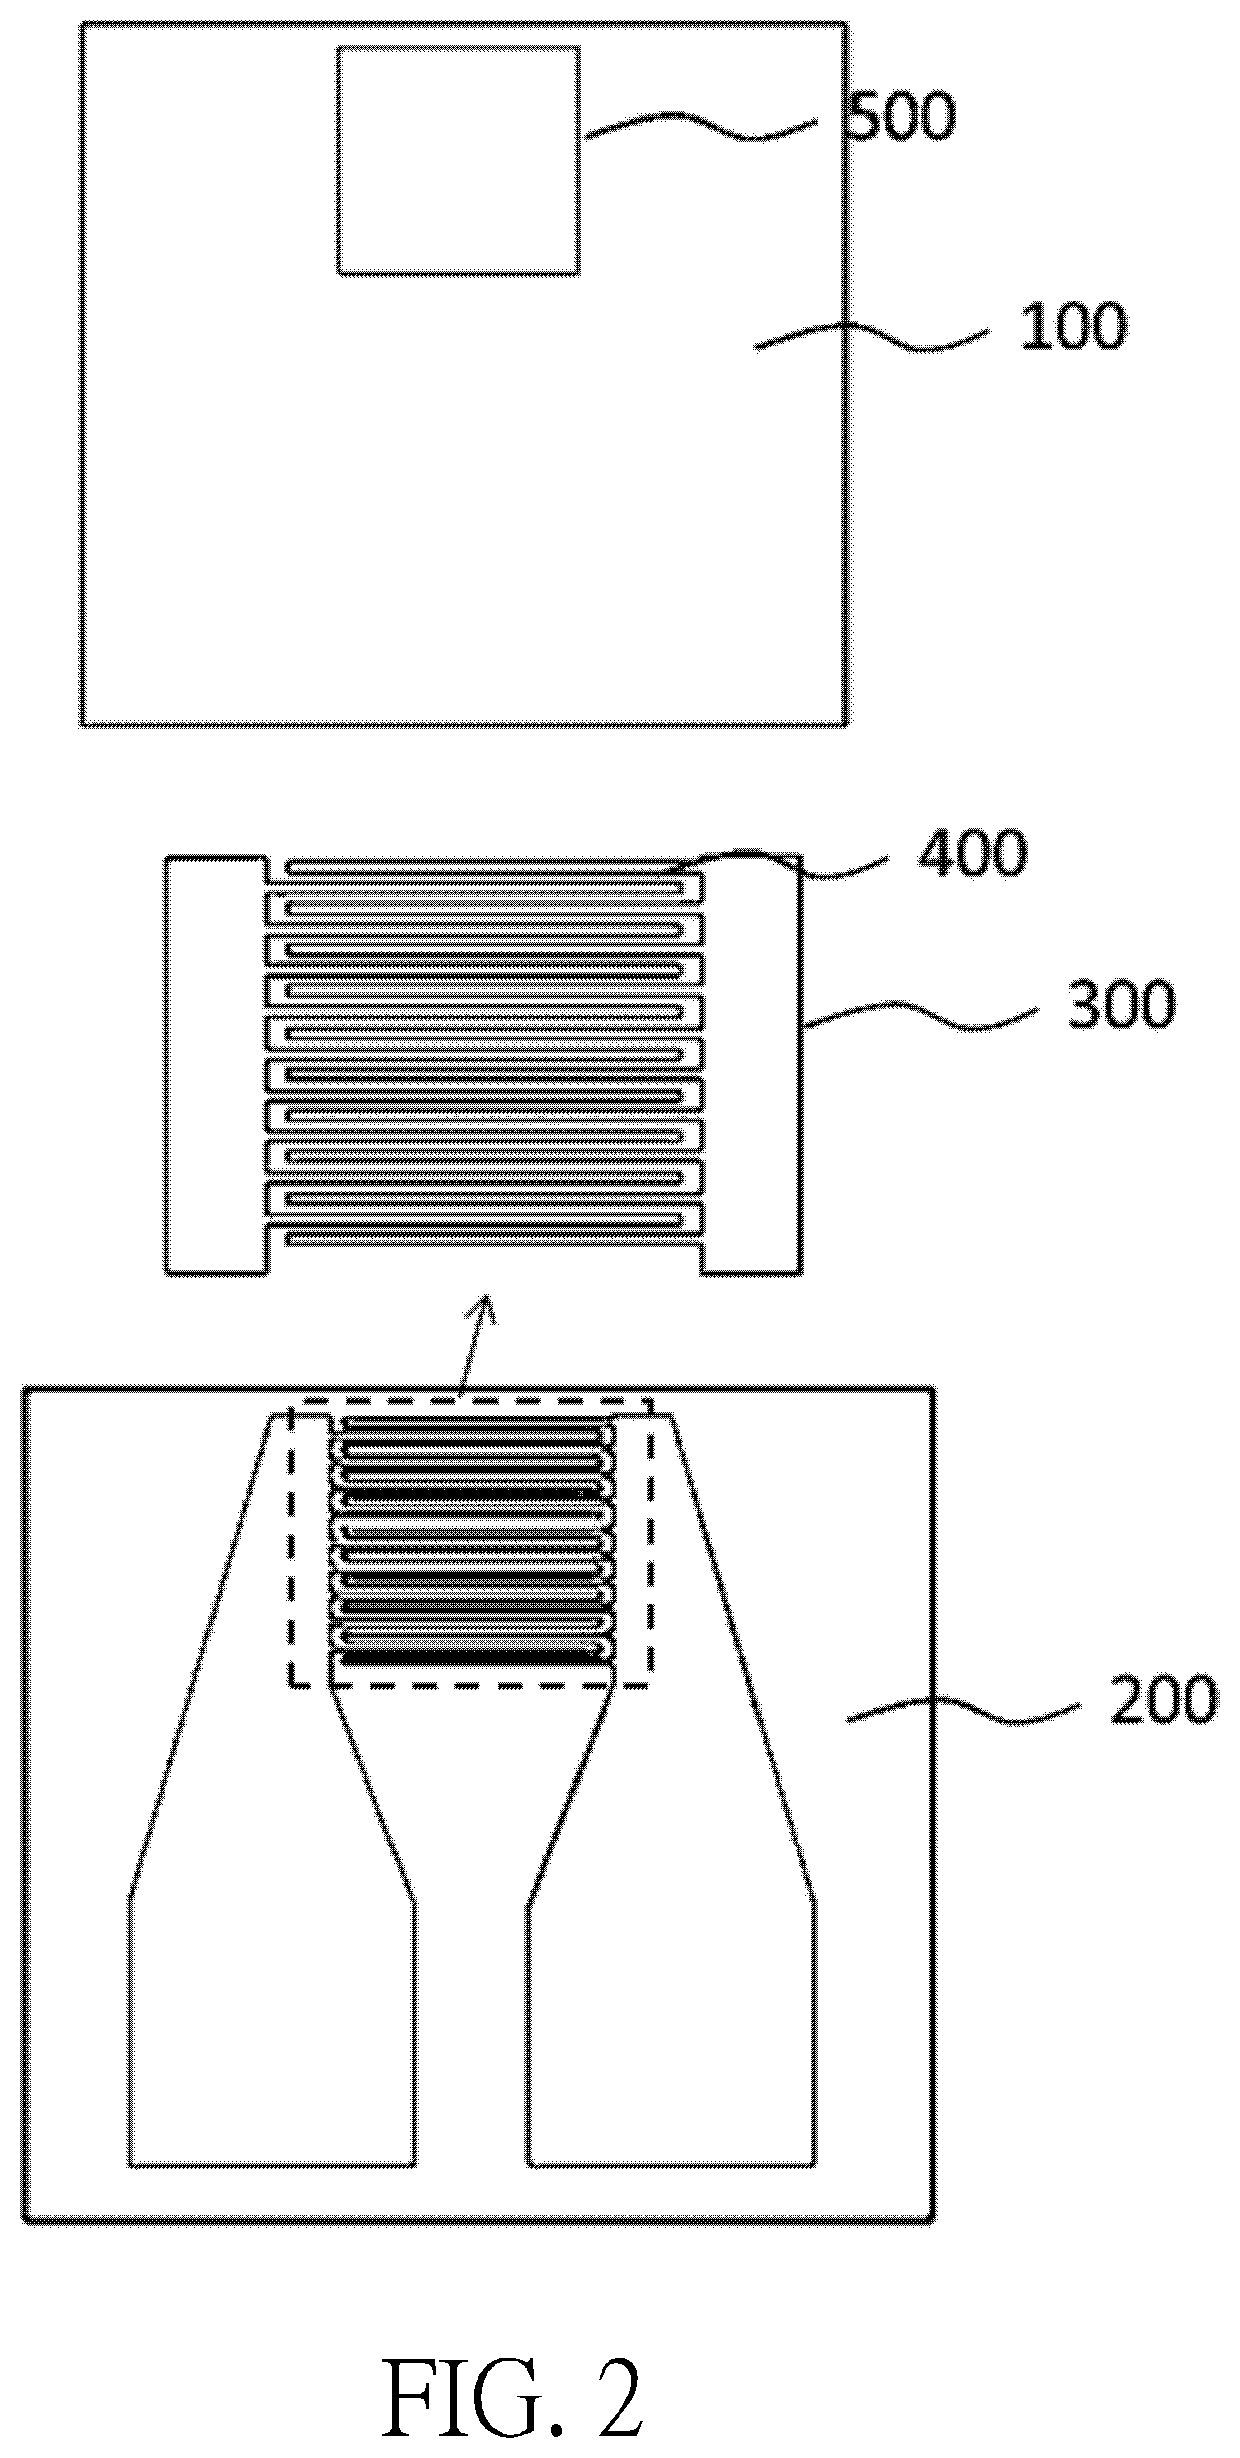 Method for preparing aluminum nitride-zinc oxide ultraviolet detecting electrode